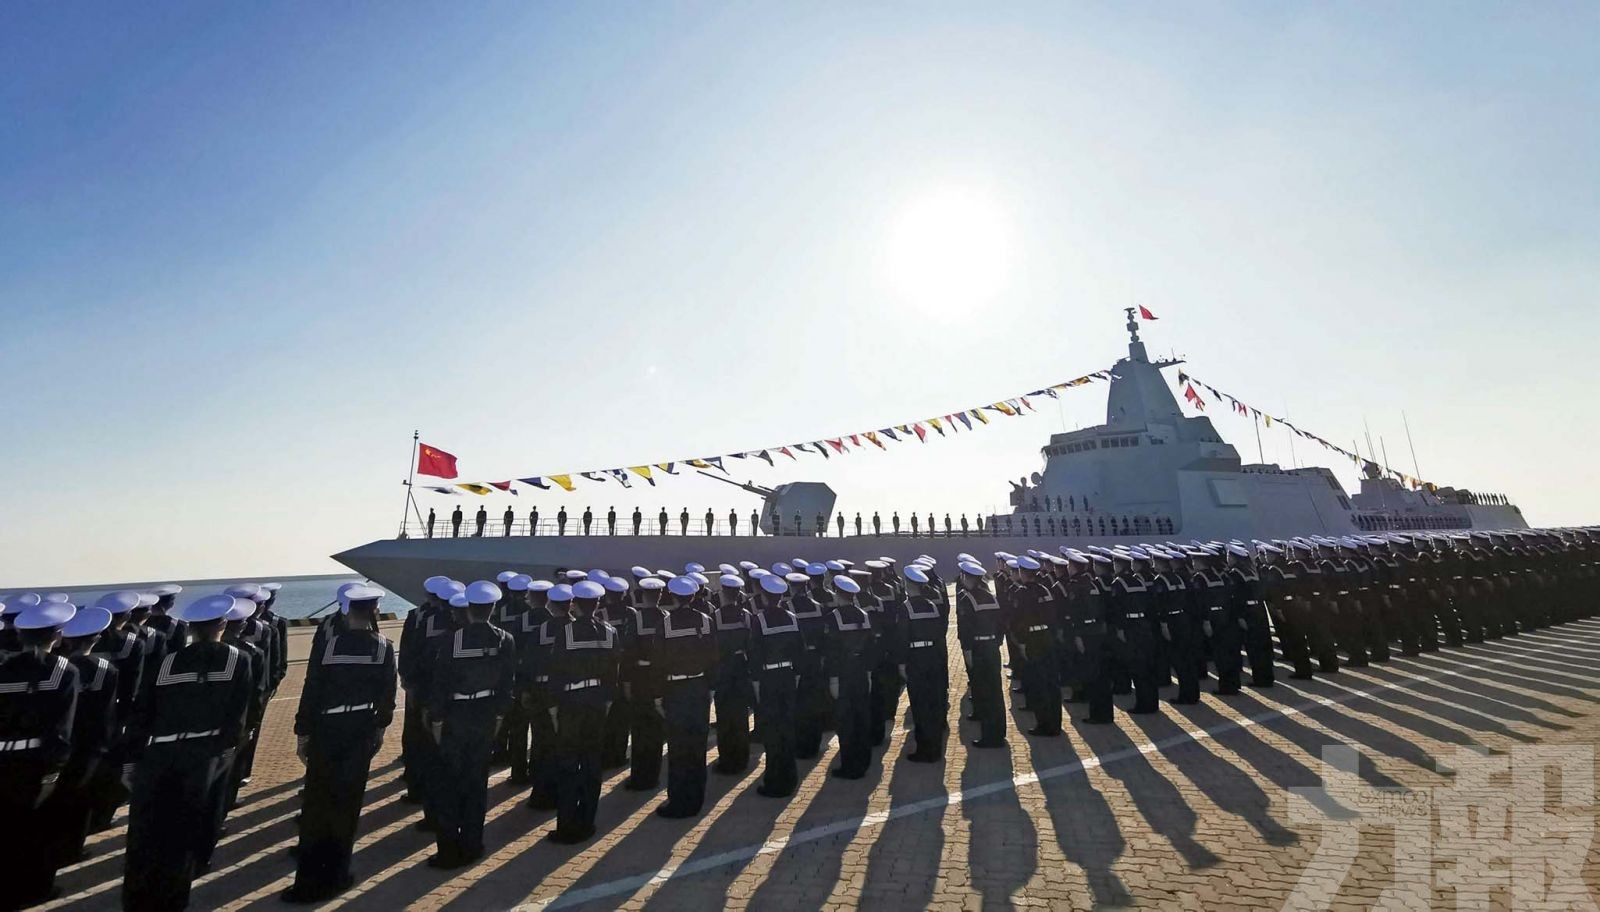 中國首艘萬噸級驅逐艦